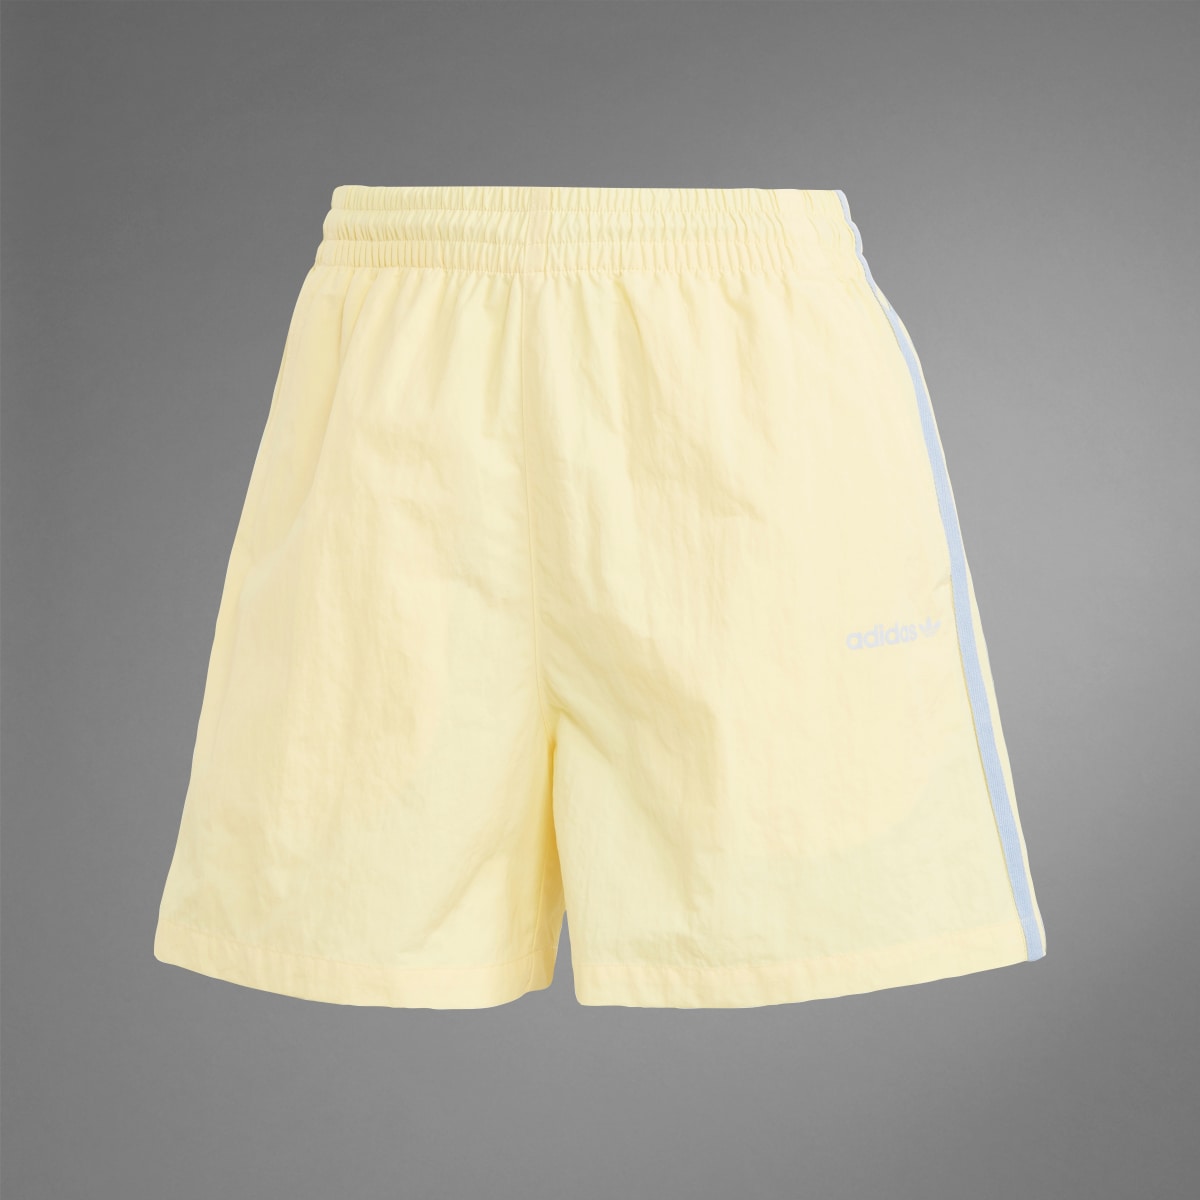 Adidas Island Club Shorts. 10